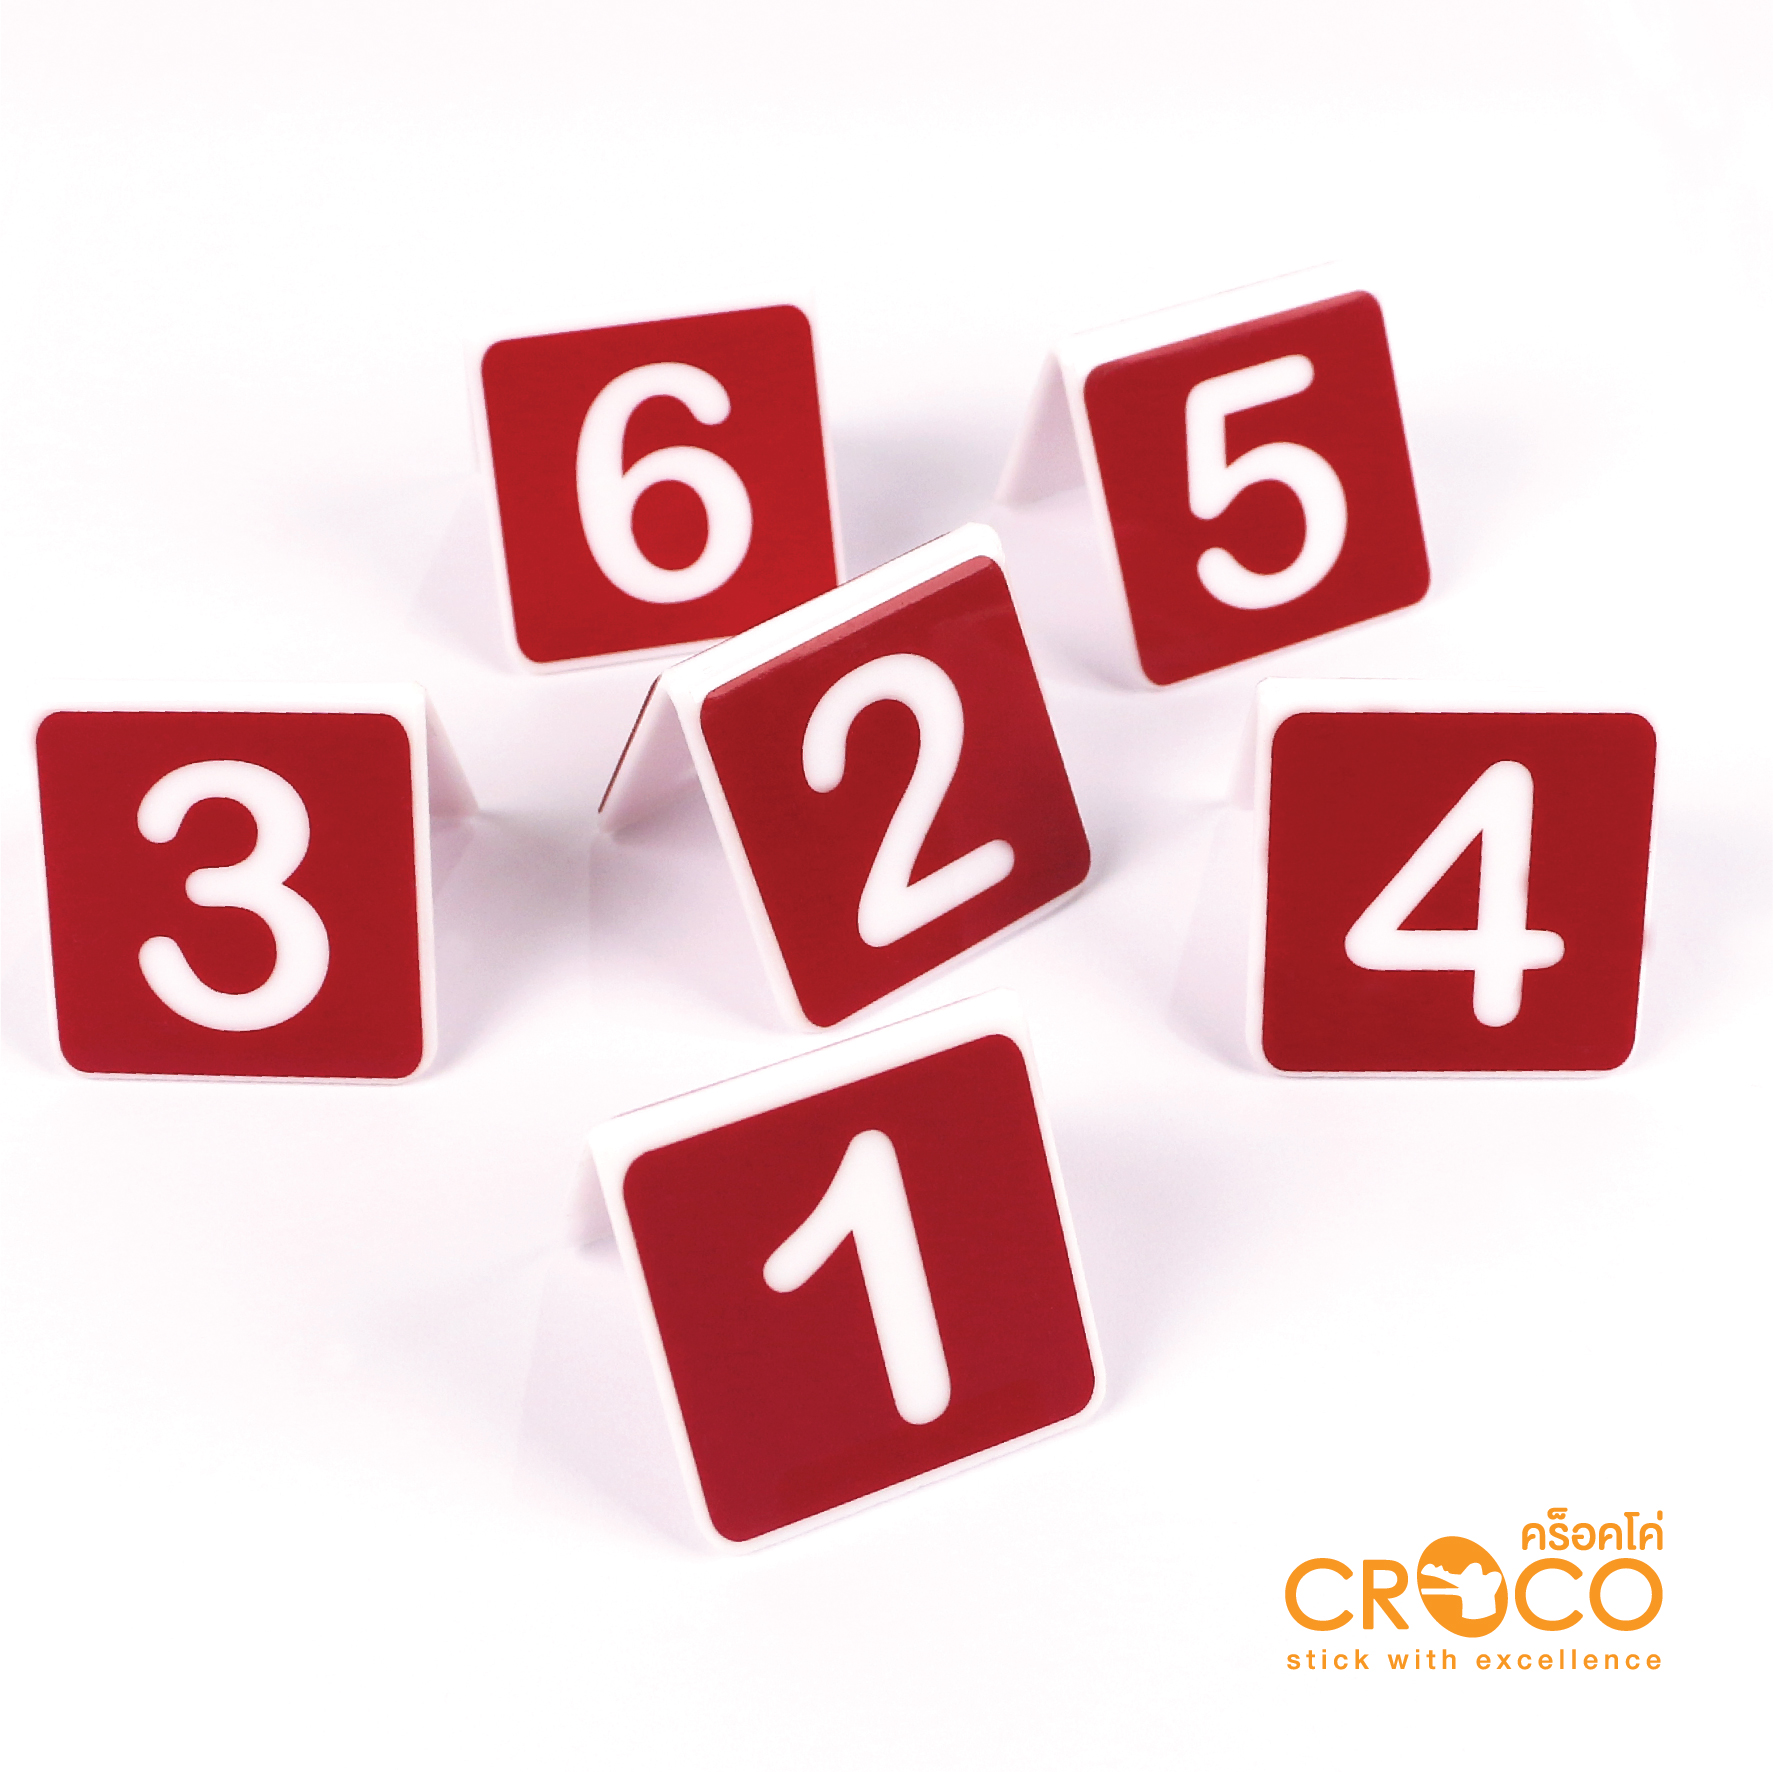 ป้ายอะคริลิค ตัวเลข 1-10 สำหรับตั้งโต๊ะ 5x5 ซม. พื้นแดง ตัวเลขขาว